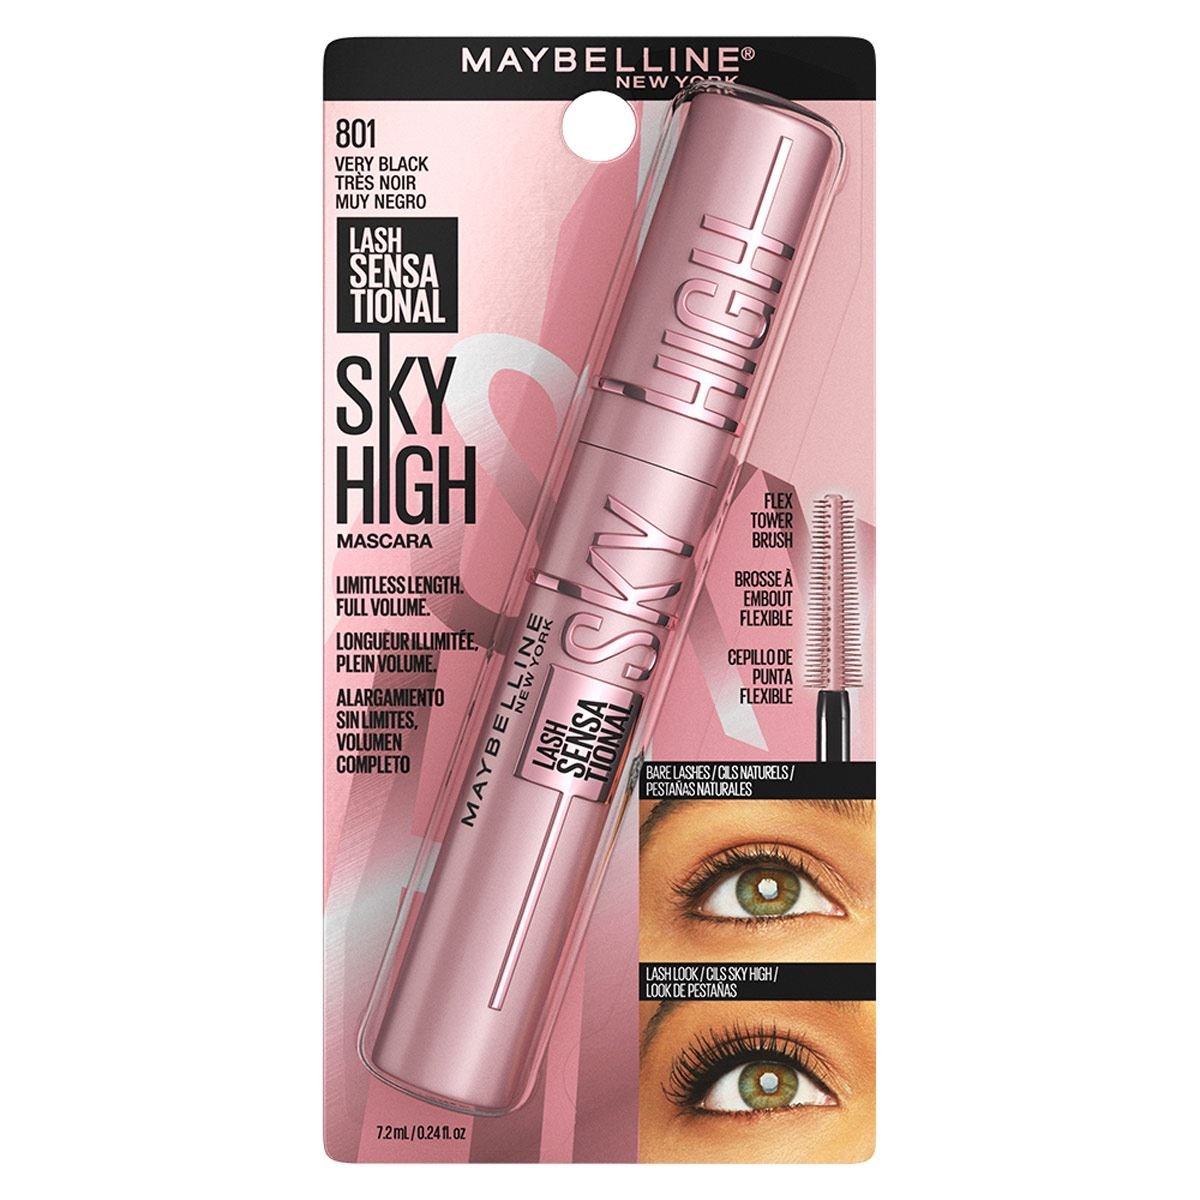 Kit de Maquillaje Maybelline para Ojos: Sombra, Delineador y Máscara de  Pestañas